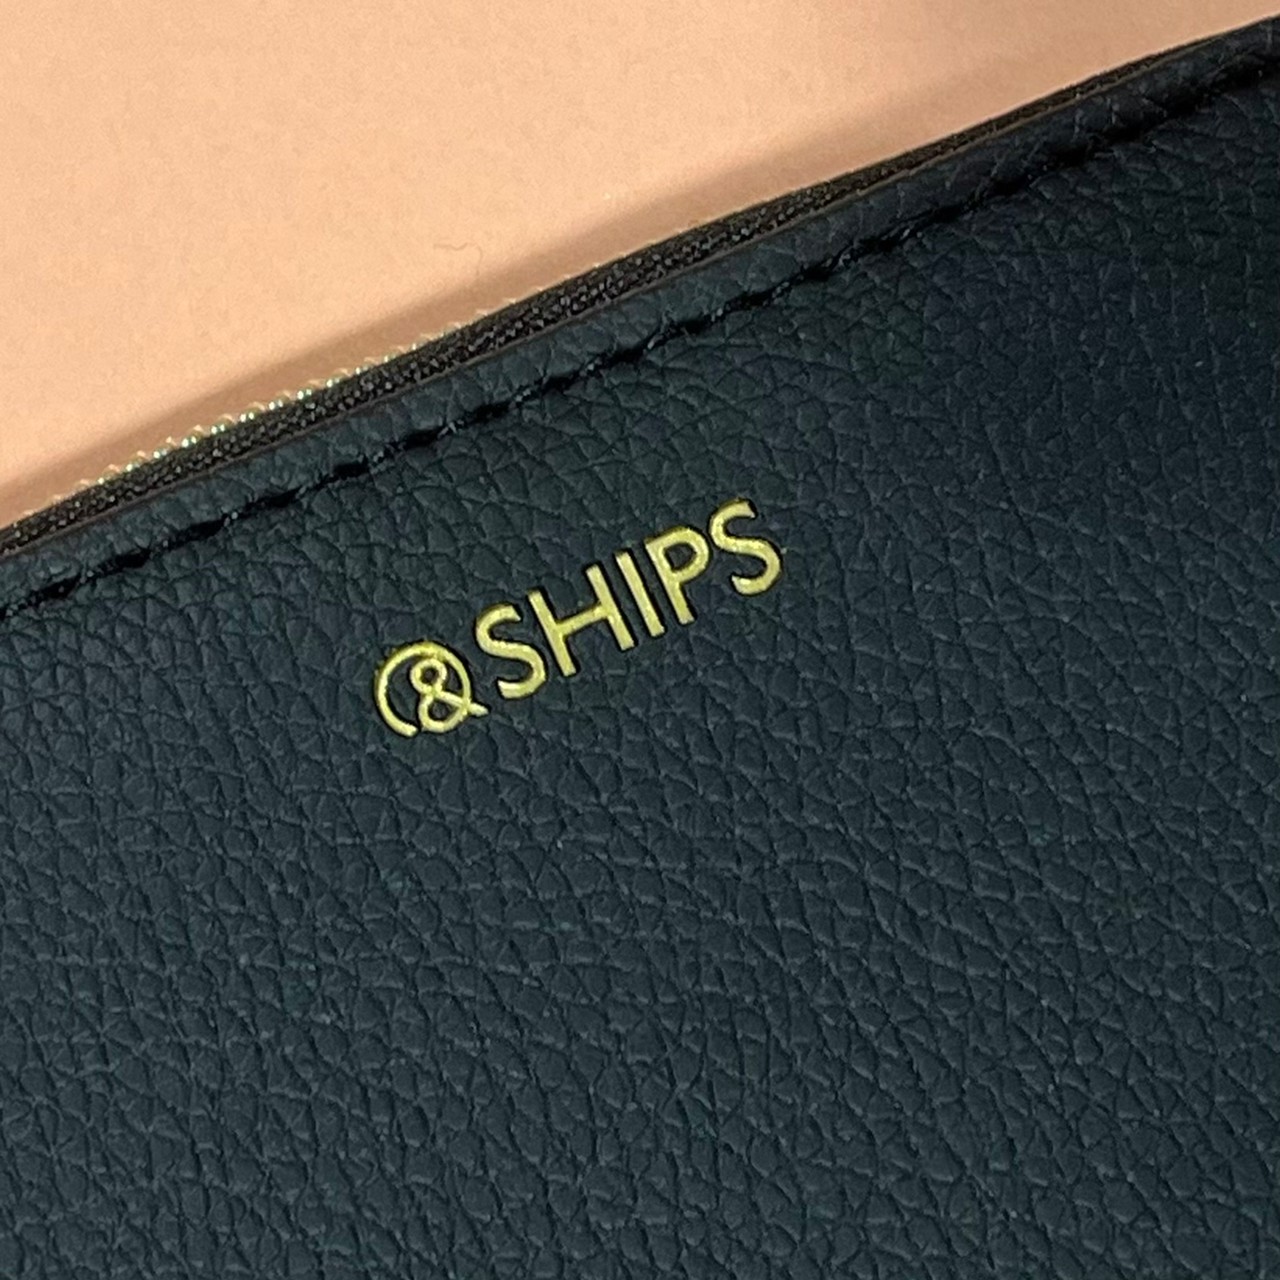 SHIPSミニ財布のブランドロゴがわかる画像